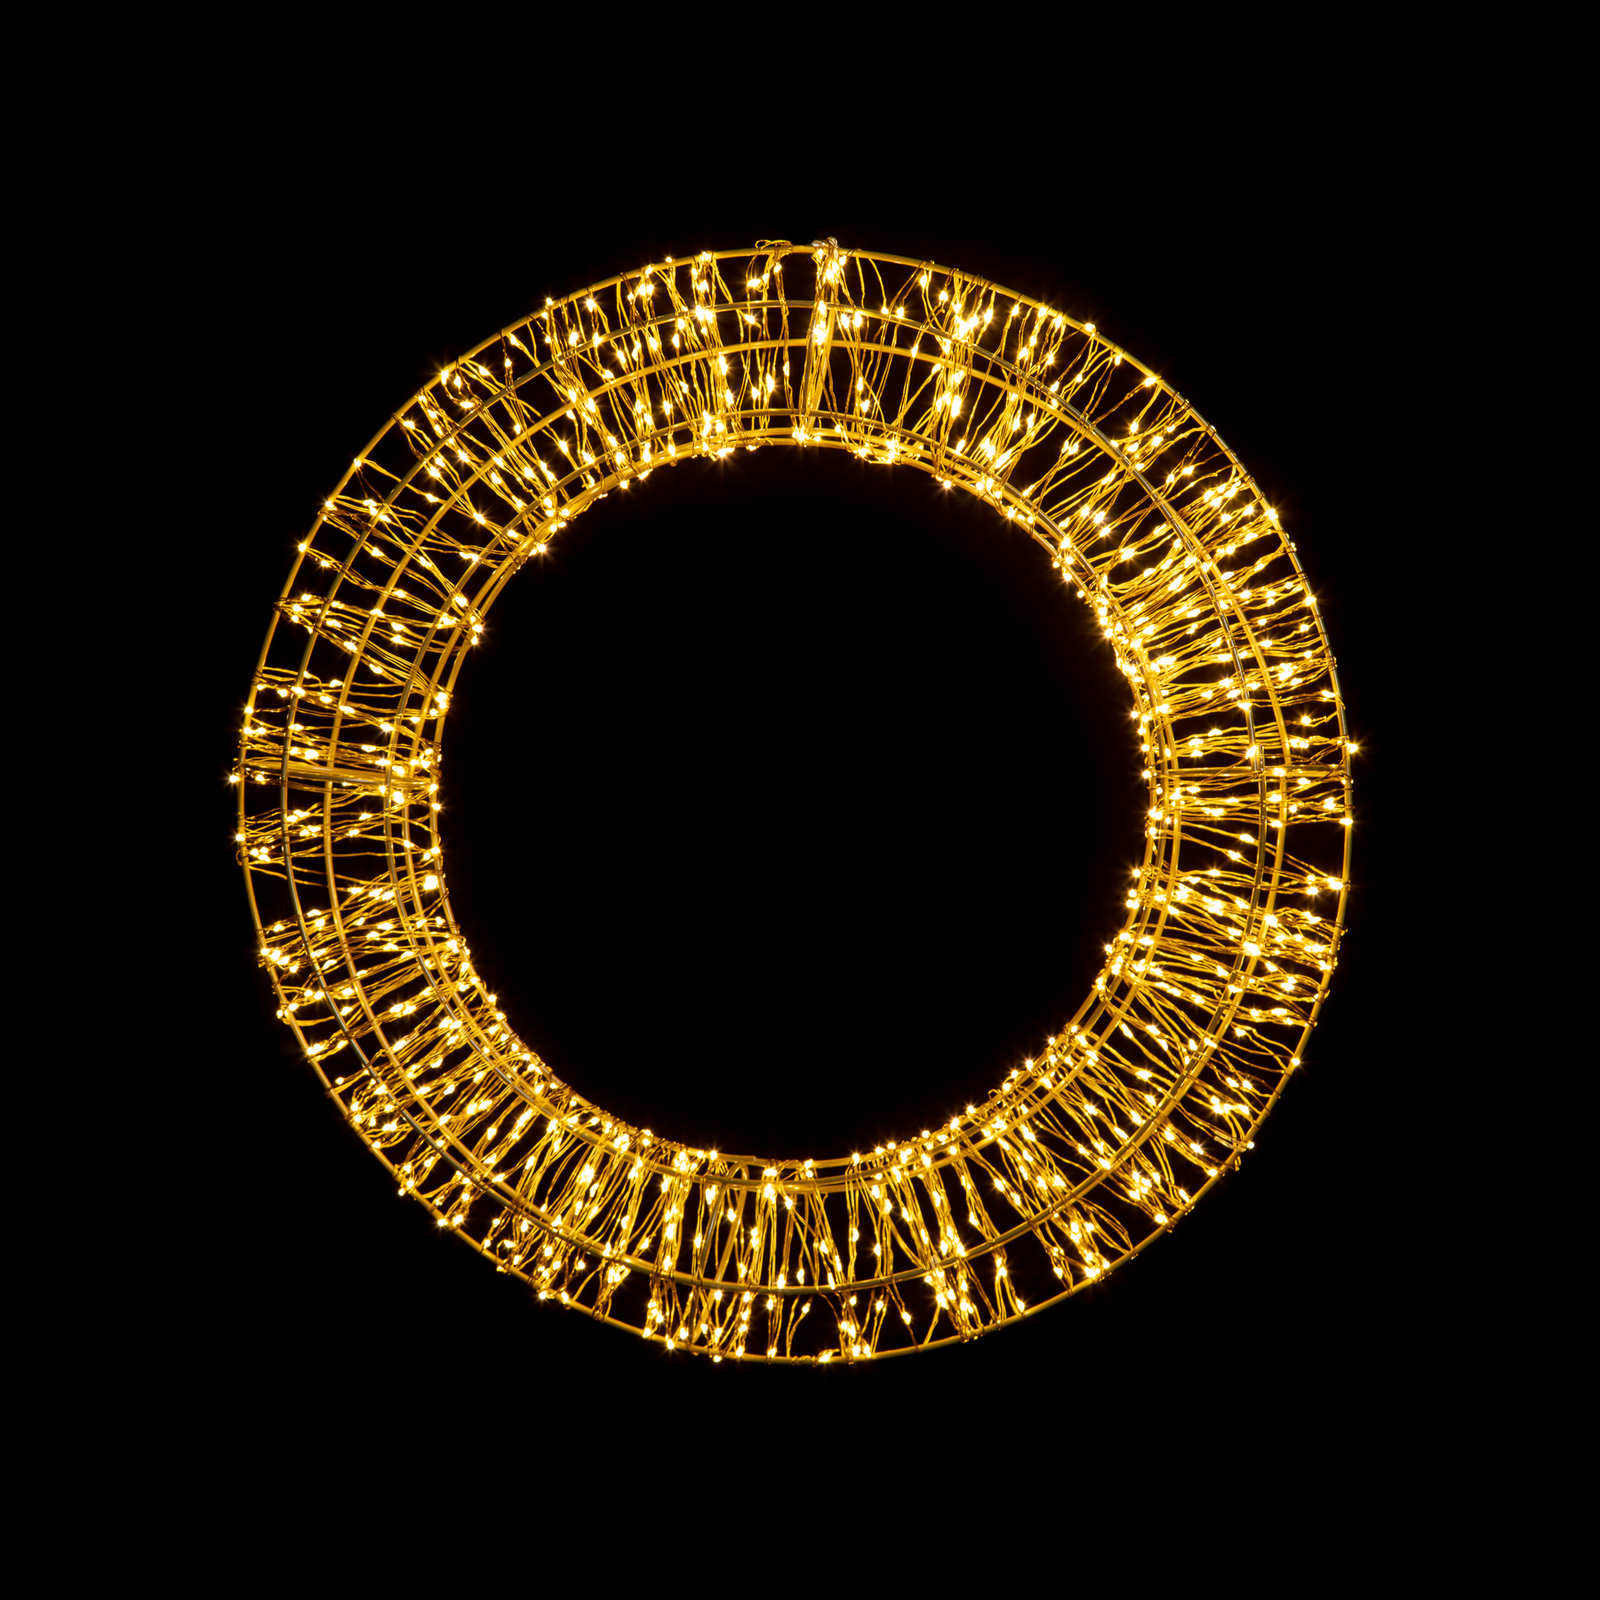 LED-Weihnachtskranz, gold, 400 LEDs, Ø 30cm